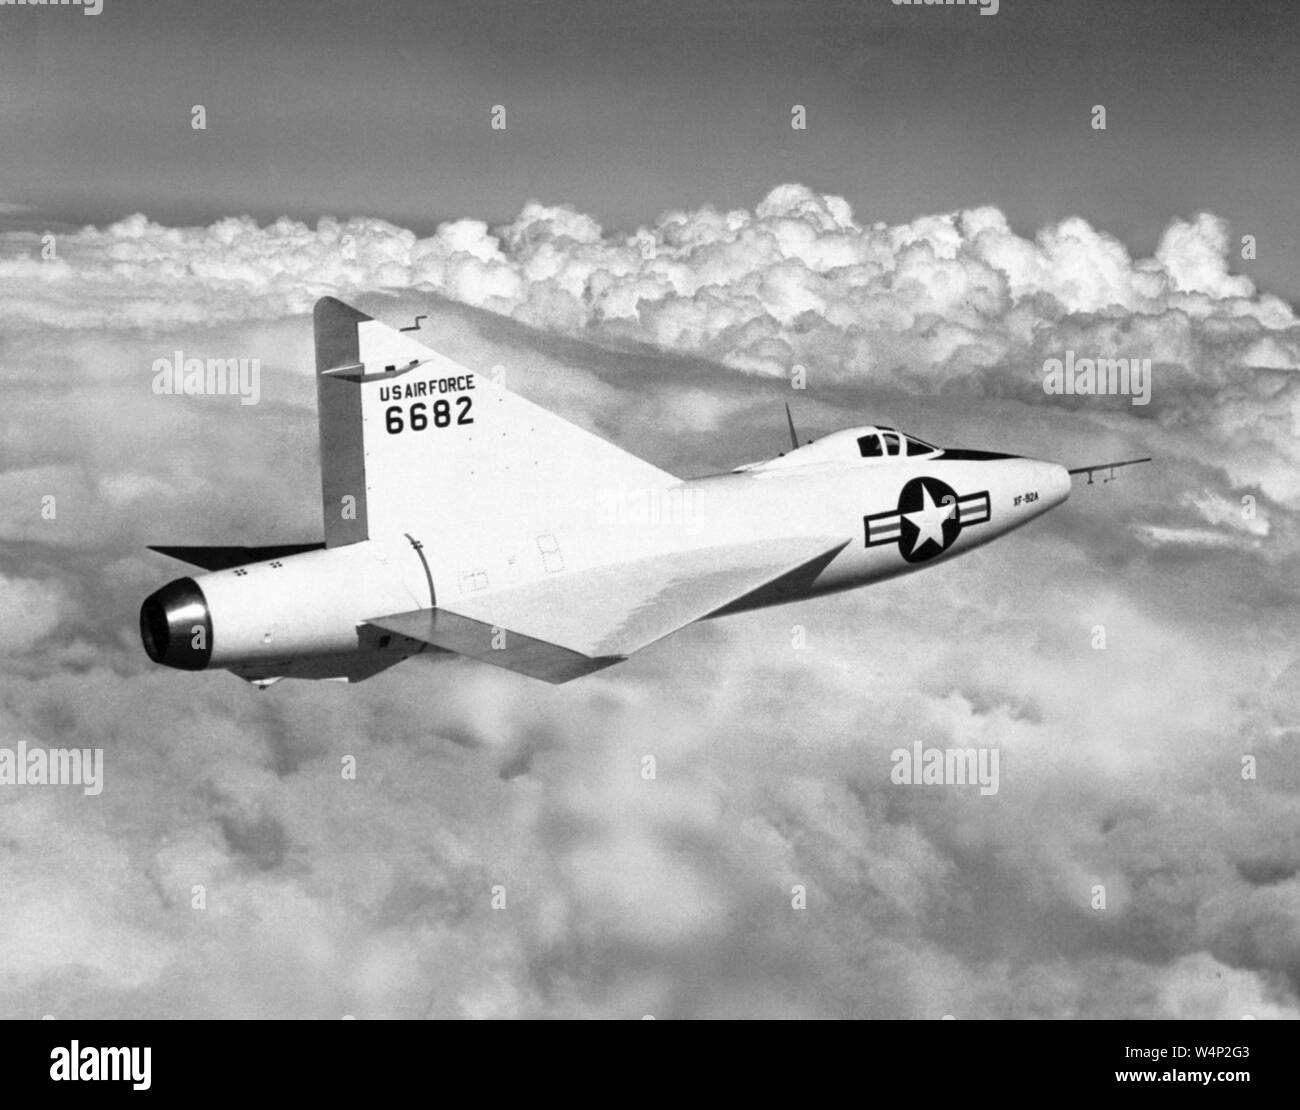 United States Air Force XF-92 ein Forschungsflugzeug in der Luft in der Nähe der Edwards Air Force Base, Kalifornien, 1953. Mit freundlicher Genehmigung der Nationalen Luft- und Raumfahrtbehörde (NASA). () Stockfoto